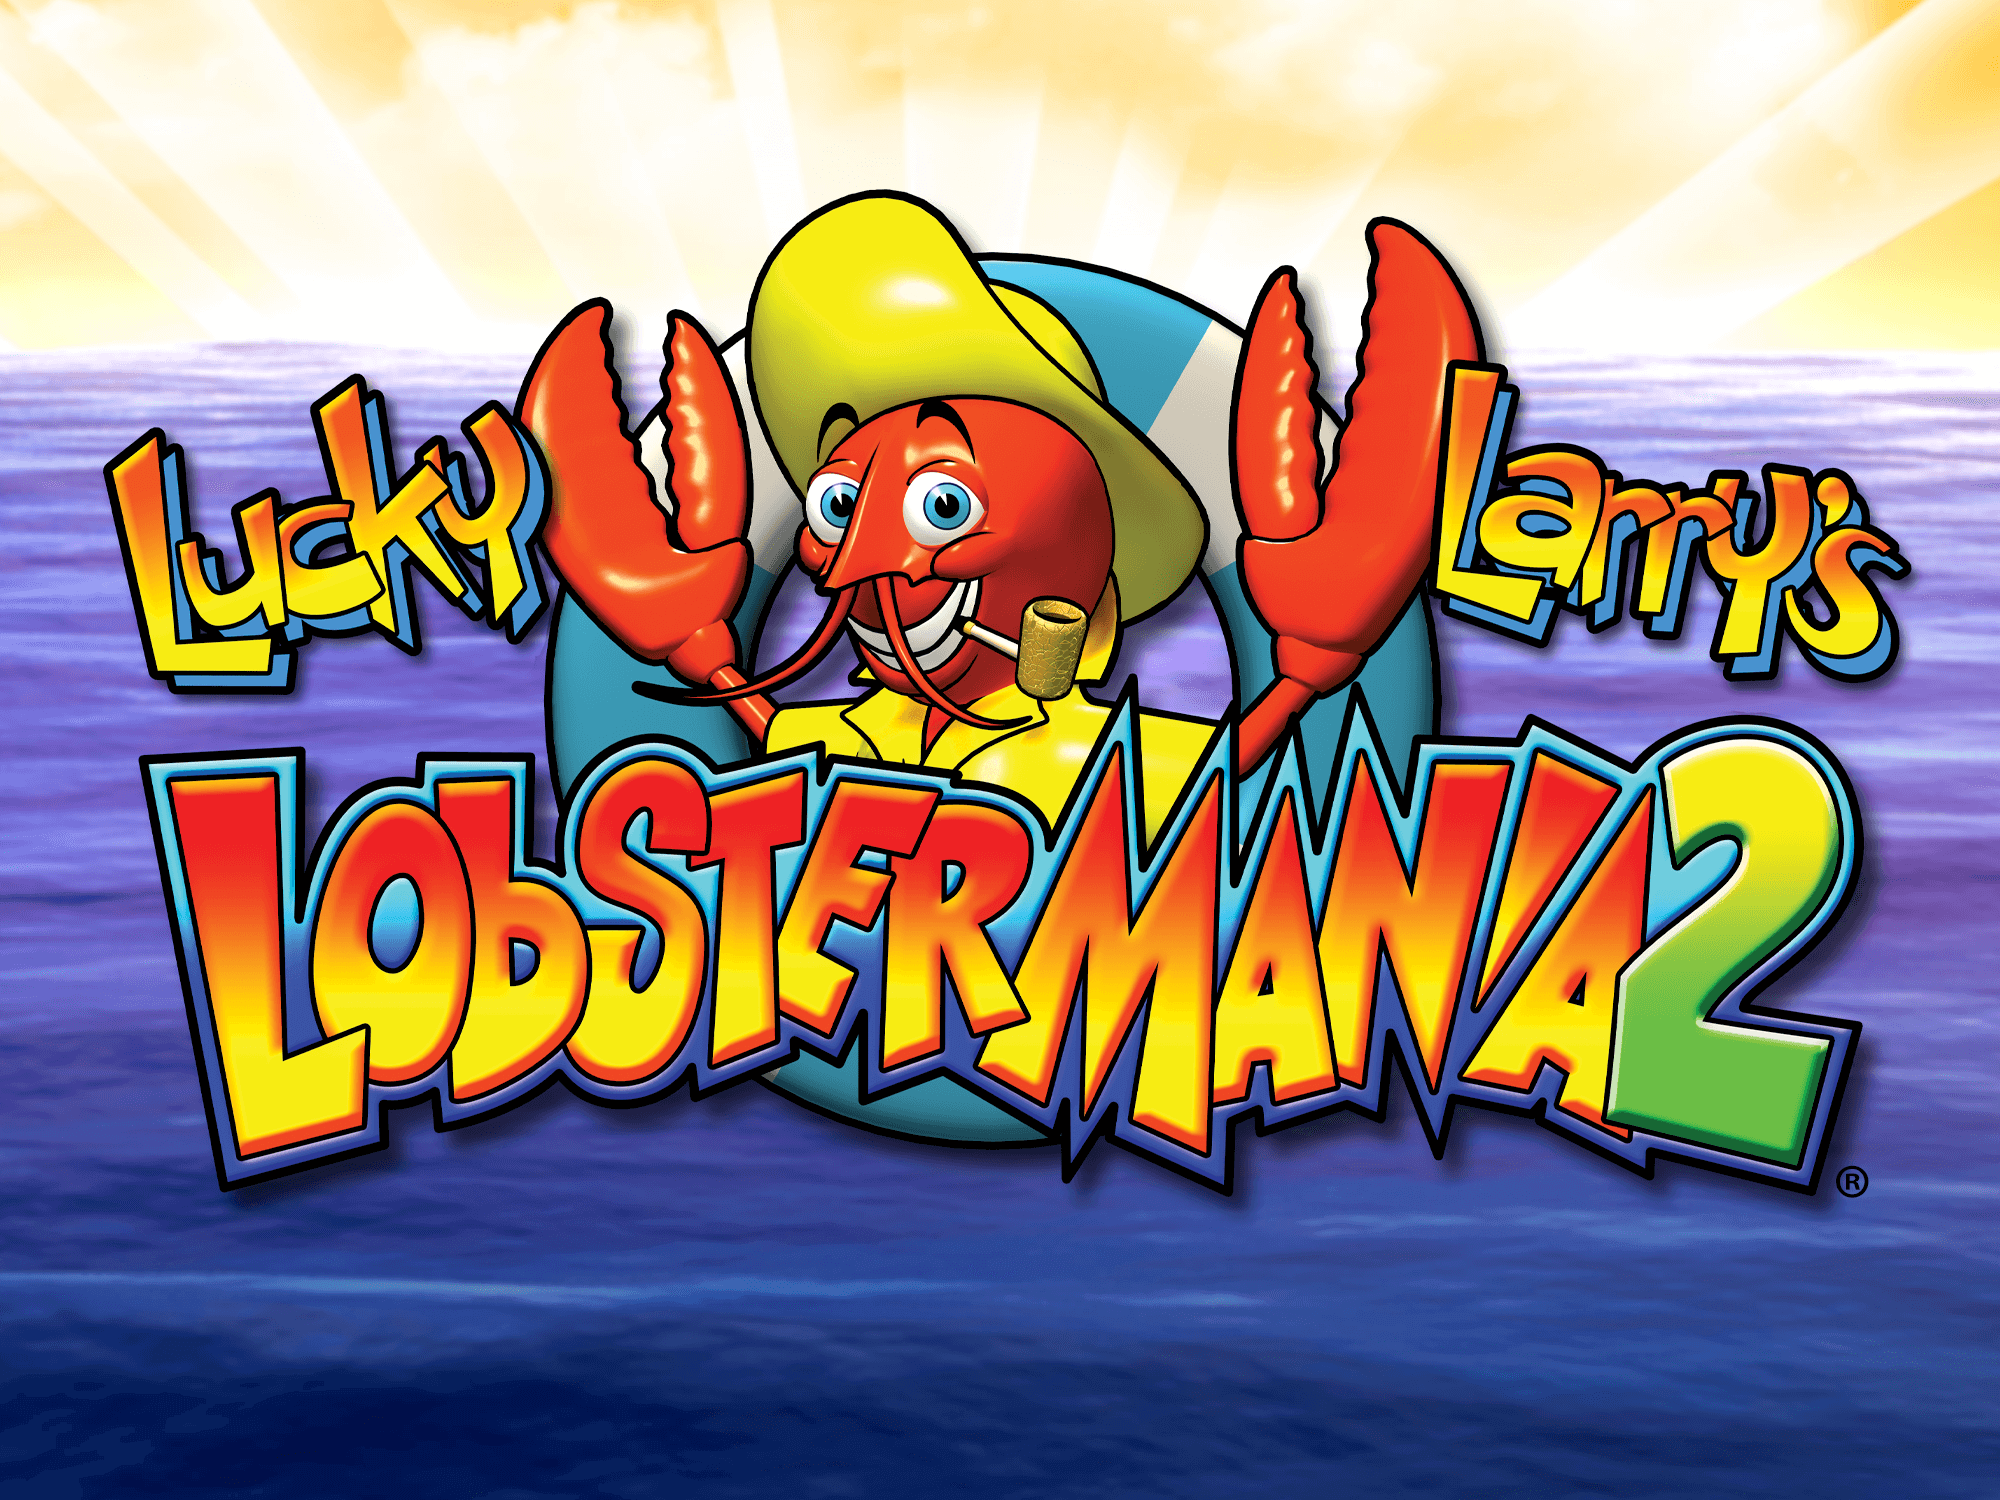 lobstermania 2 slots free online